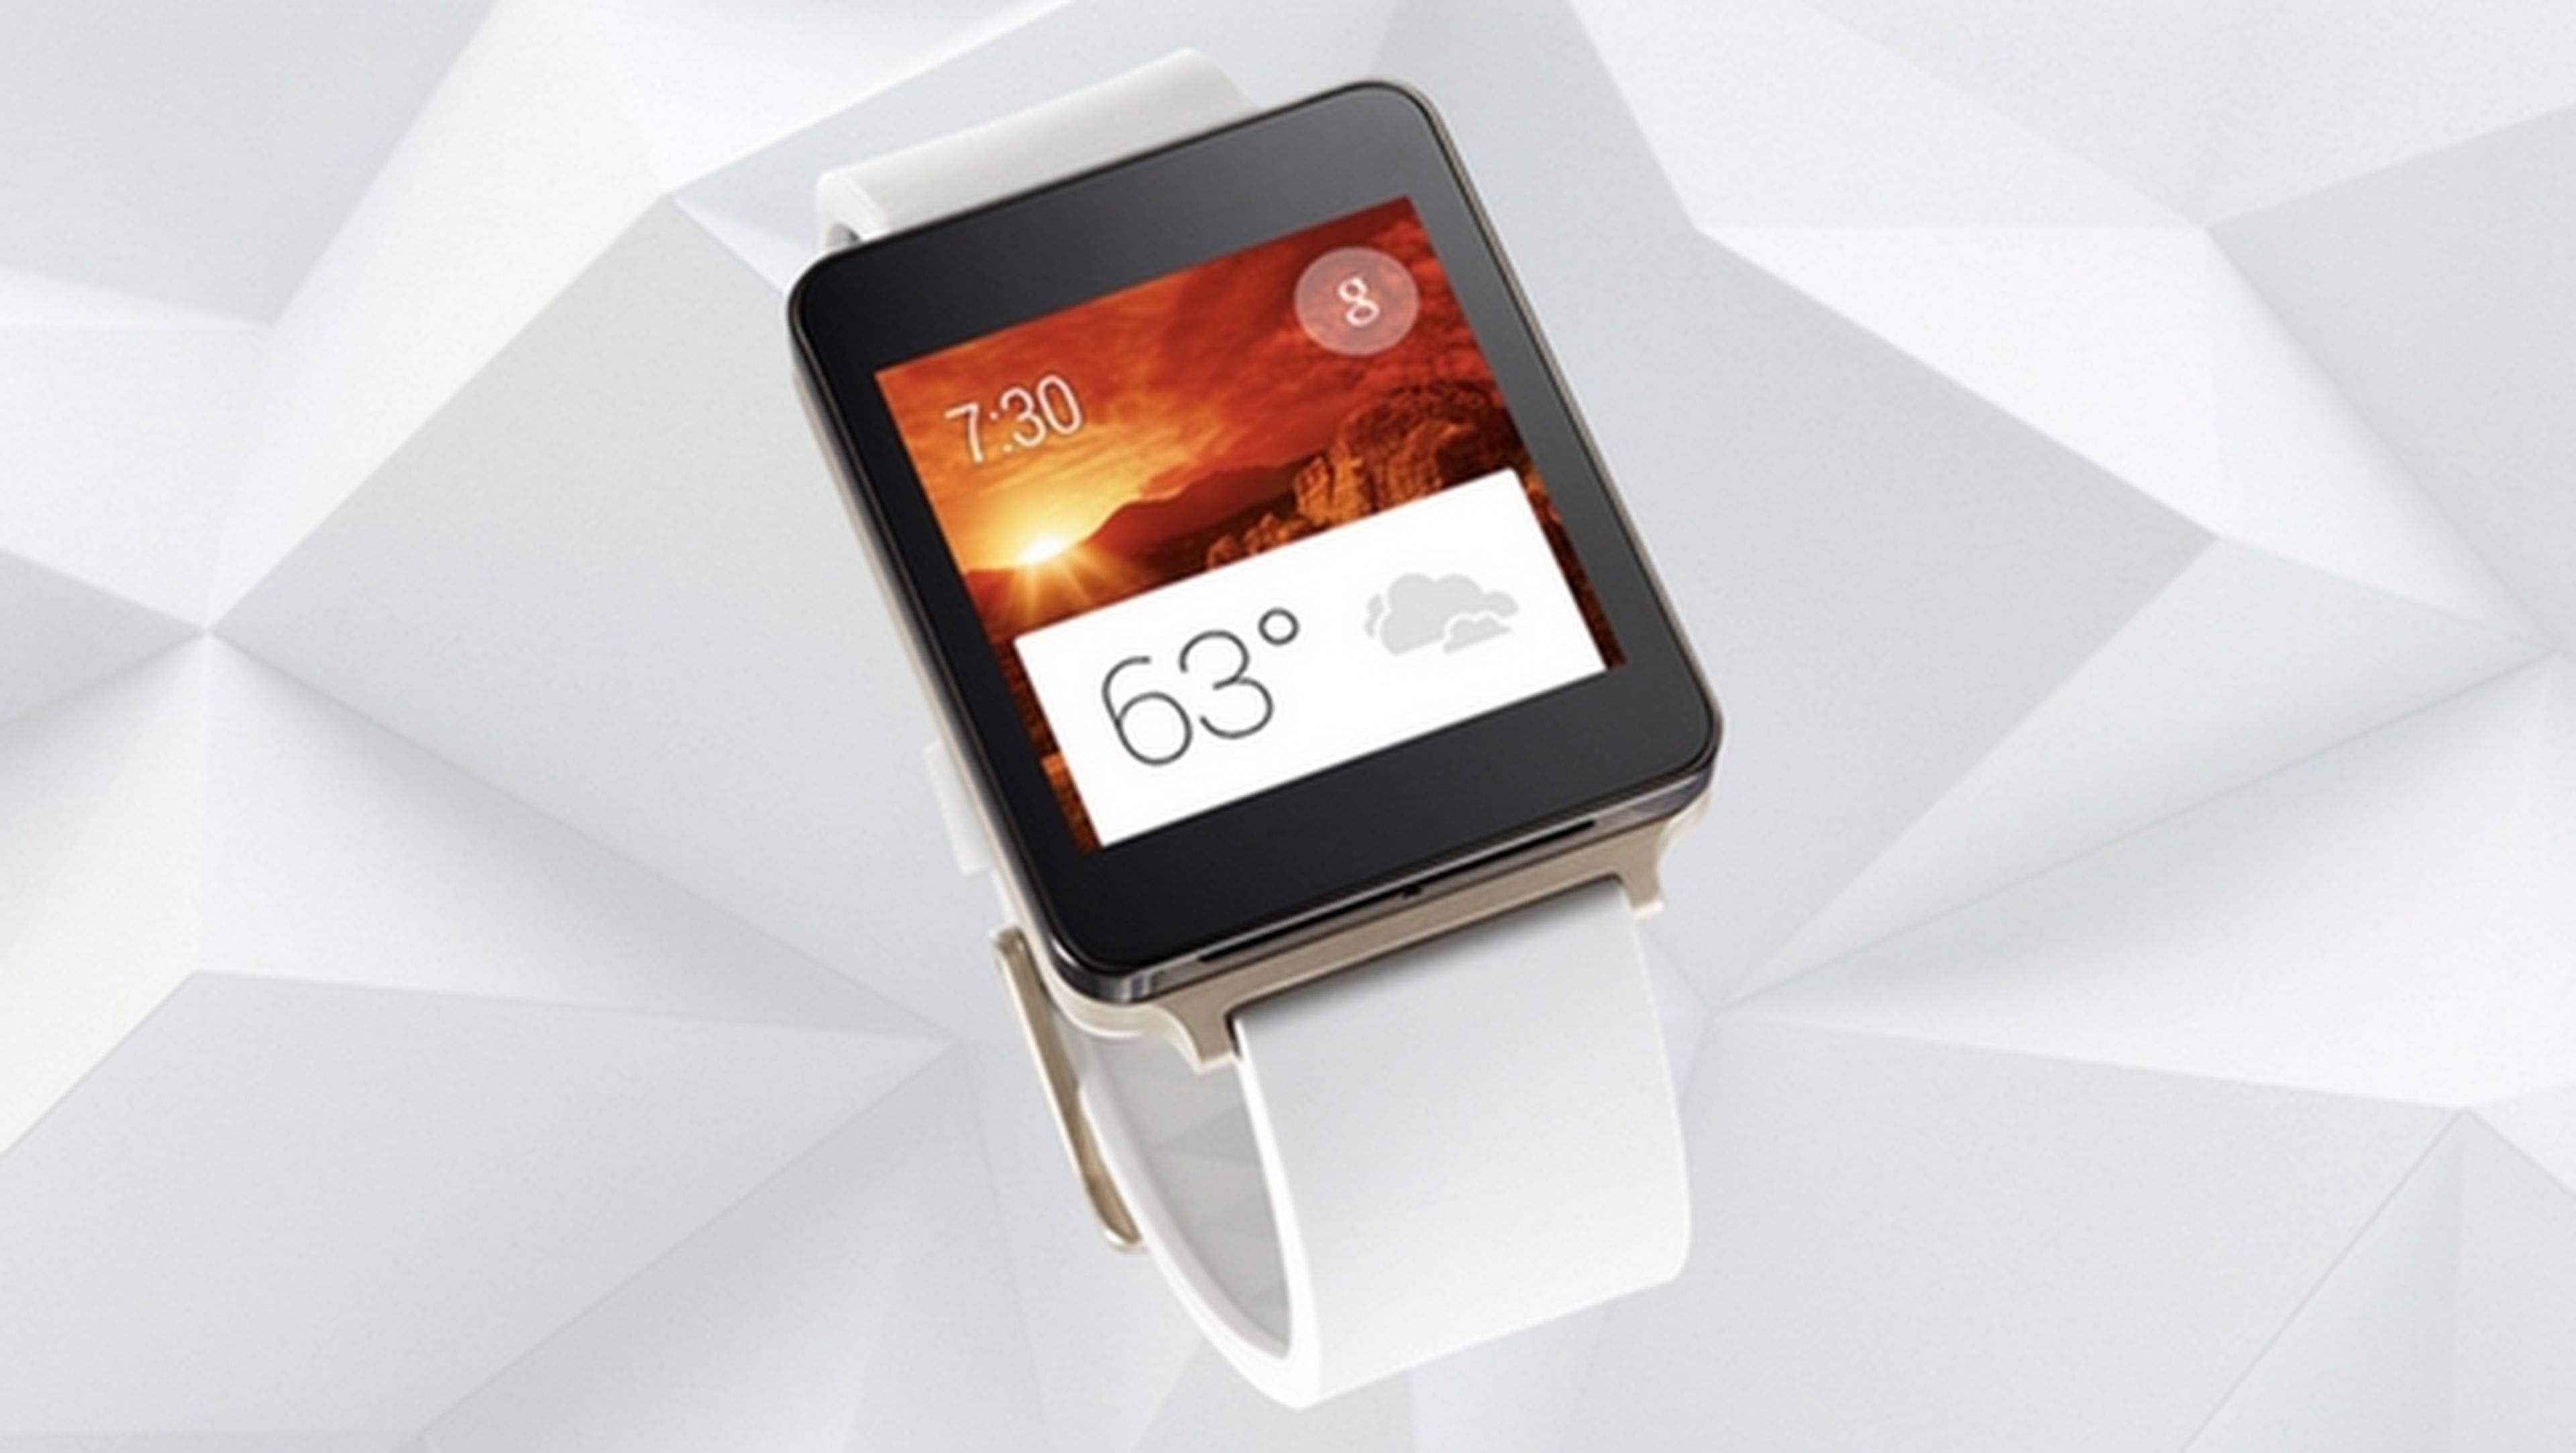 Se revela el LG G Watch, el smartwatch de LG con Android Wear, resistente al agua y pantalla siempre encendida